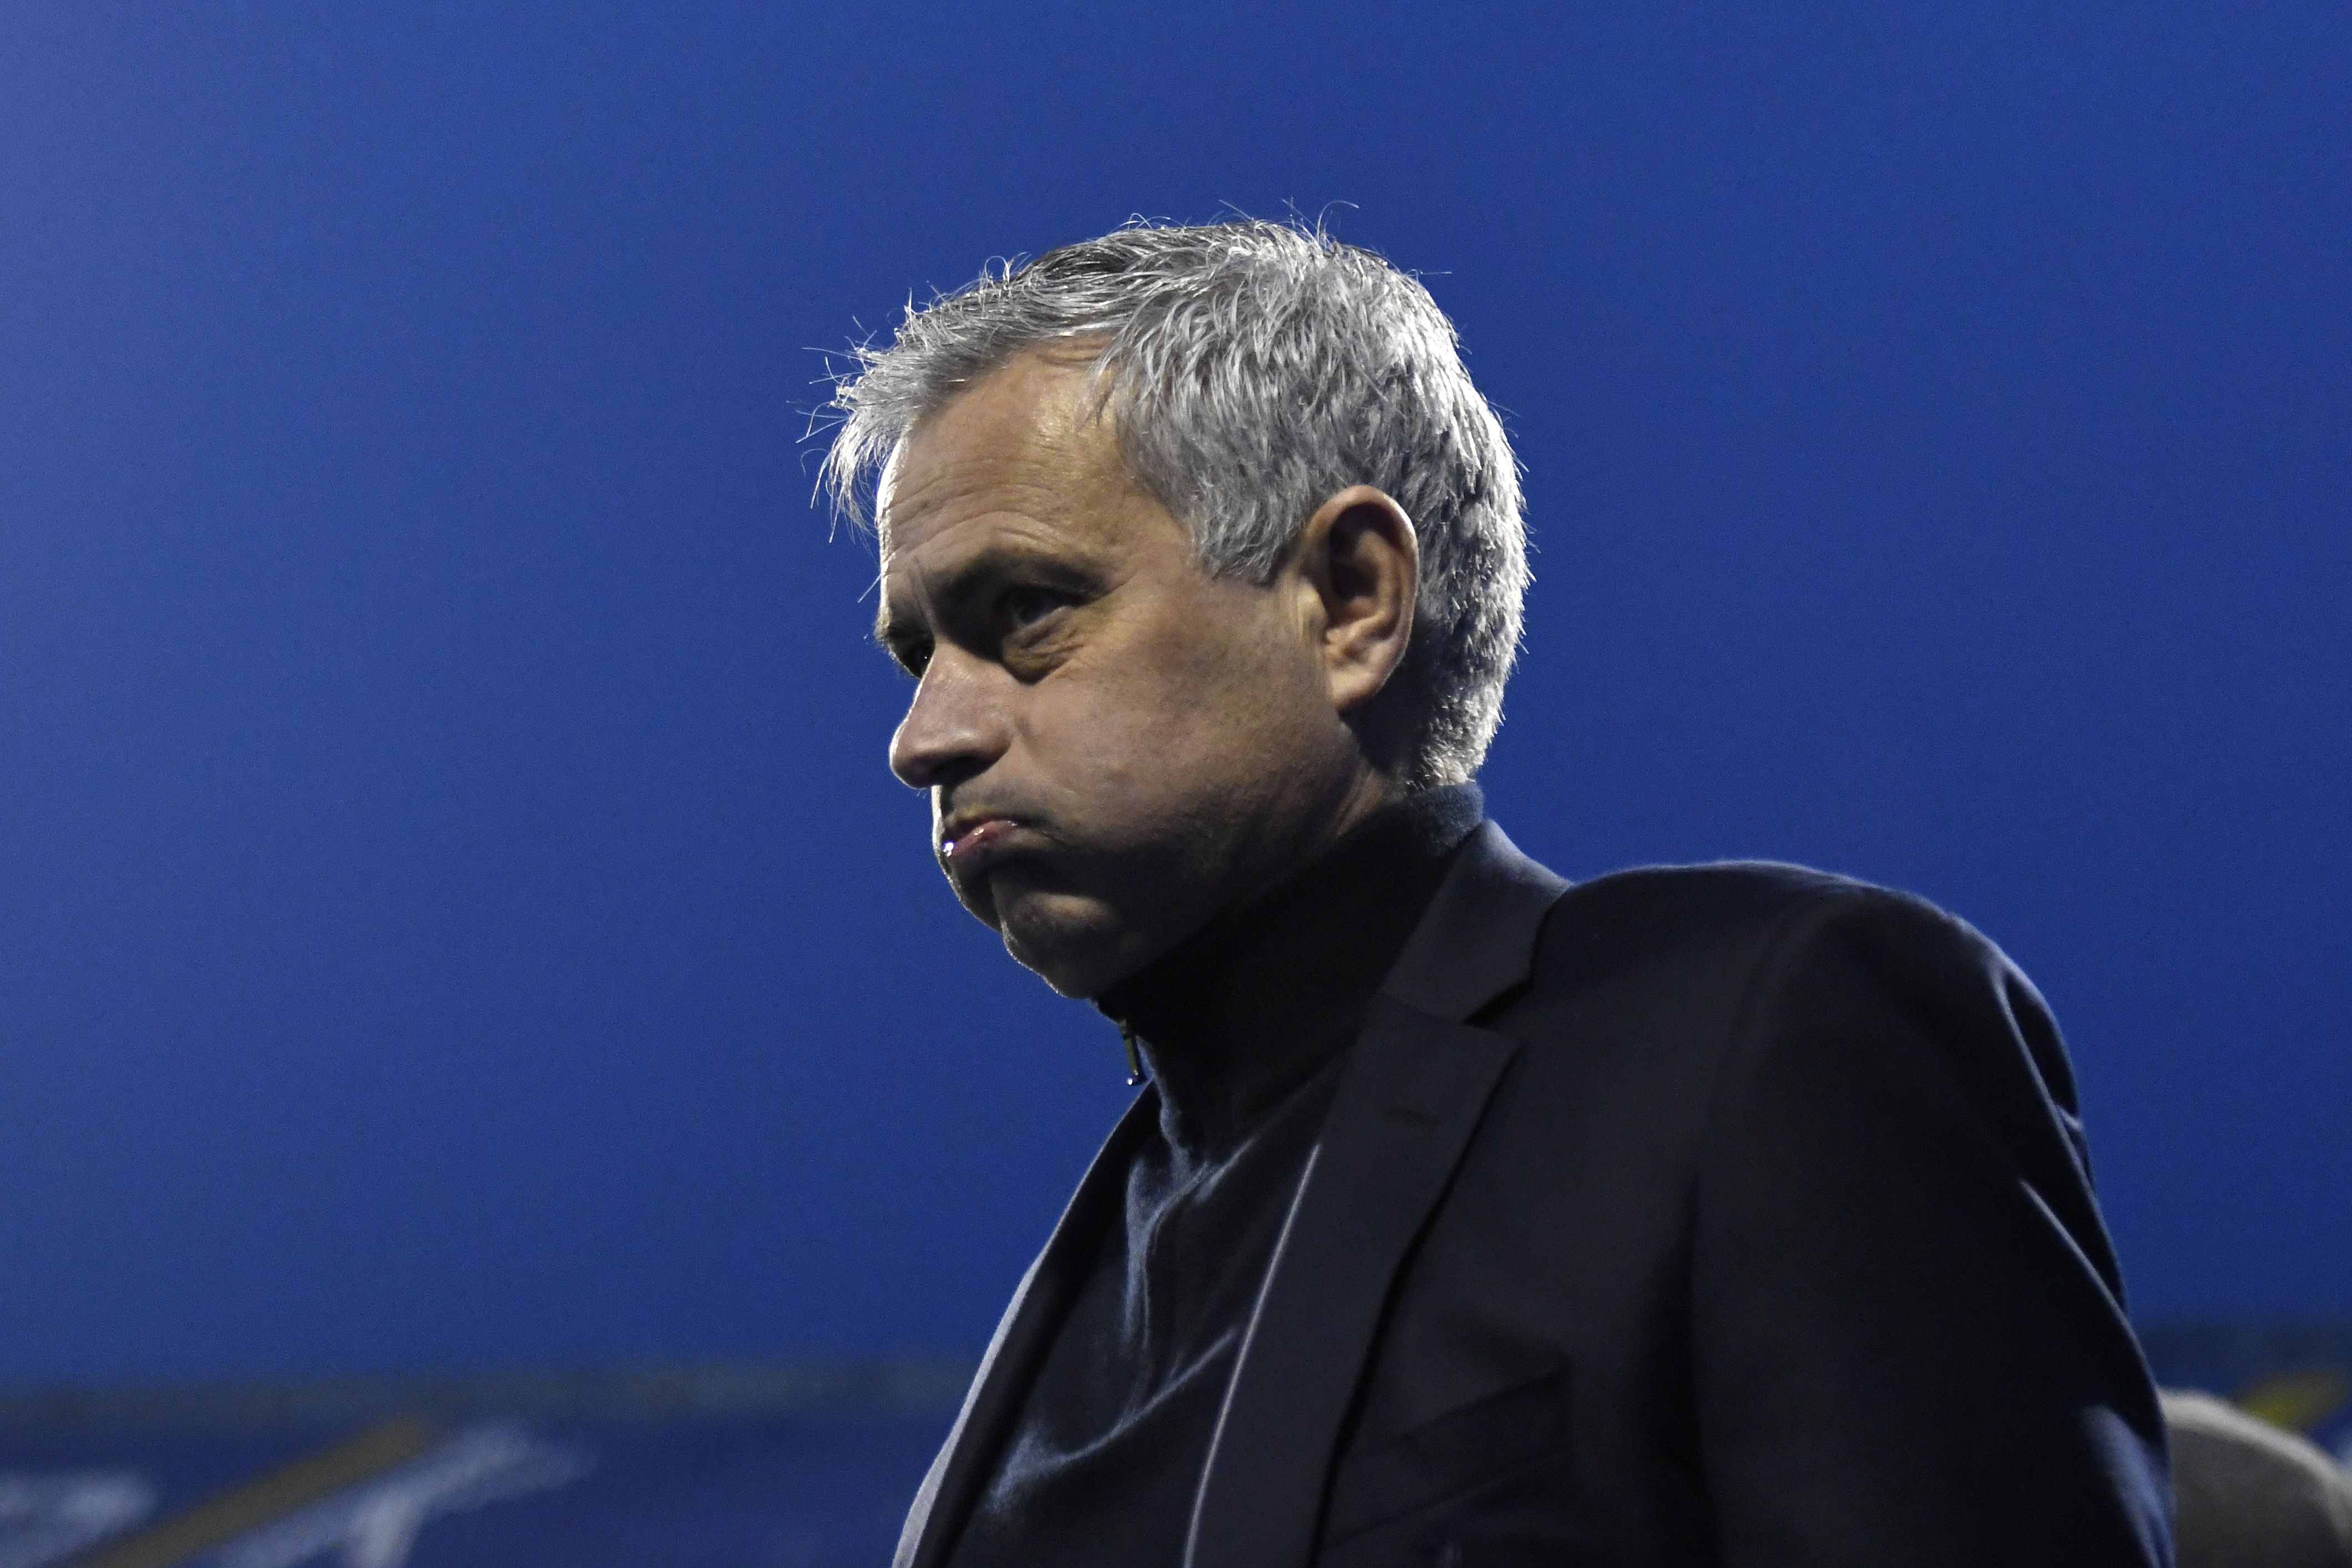 Jose Mourinho named new AS Roma coach | CNN